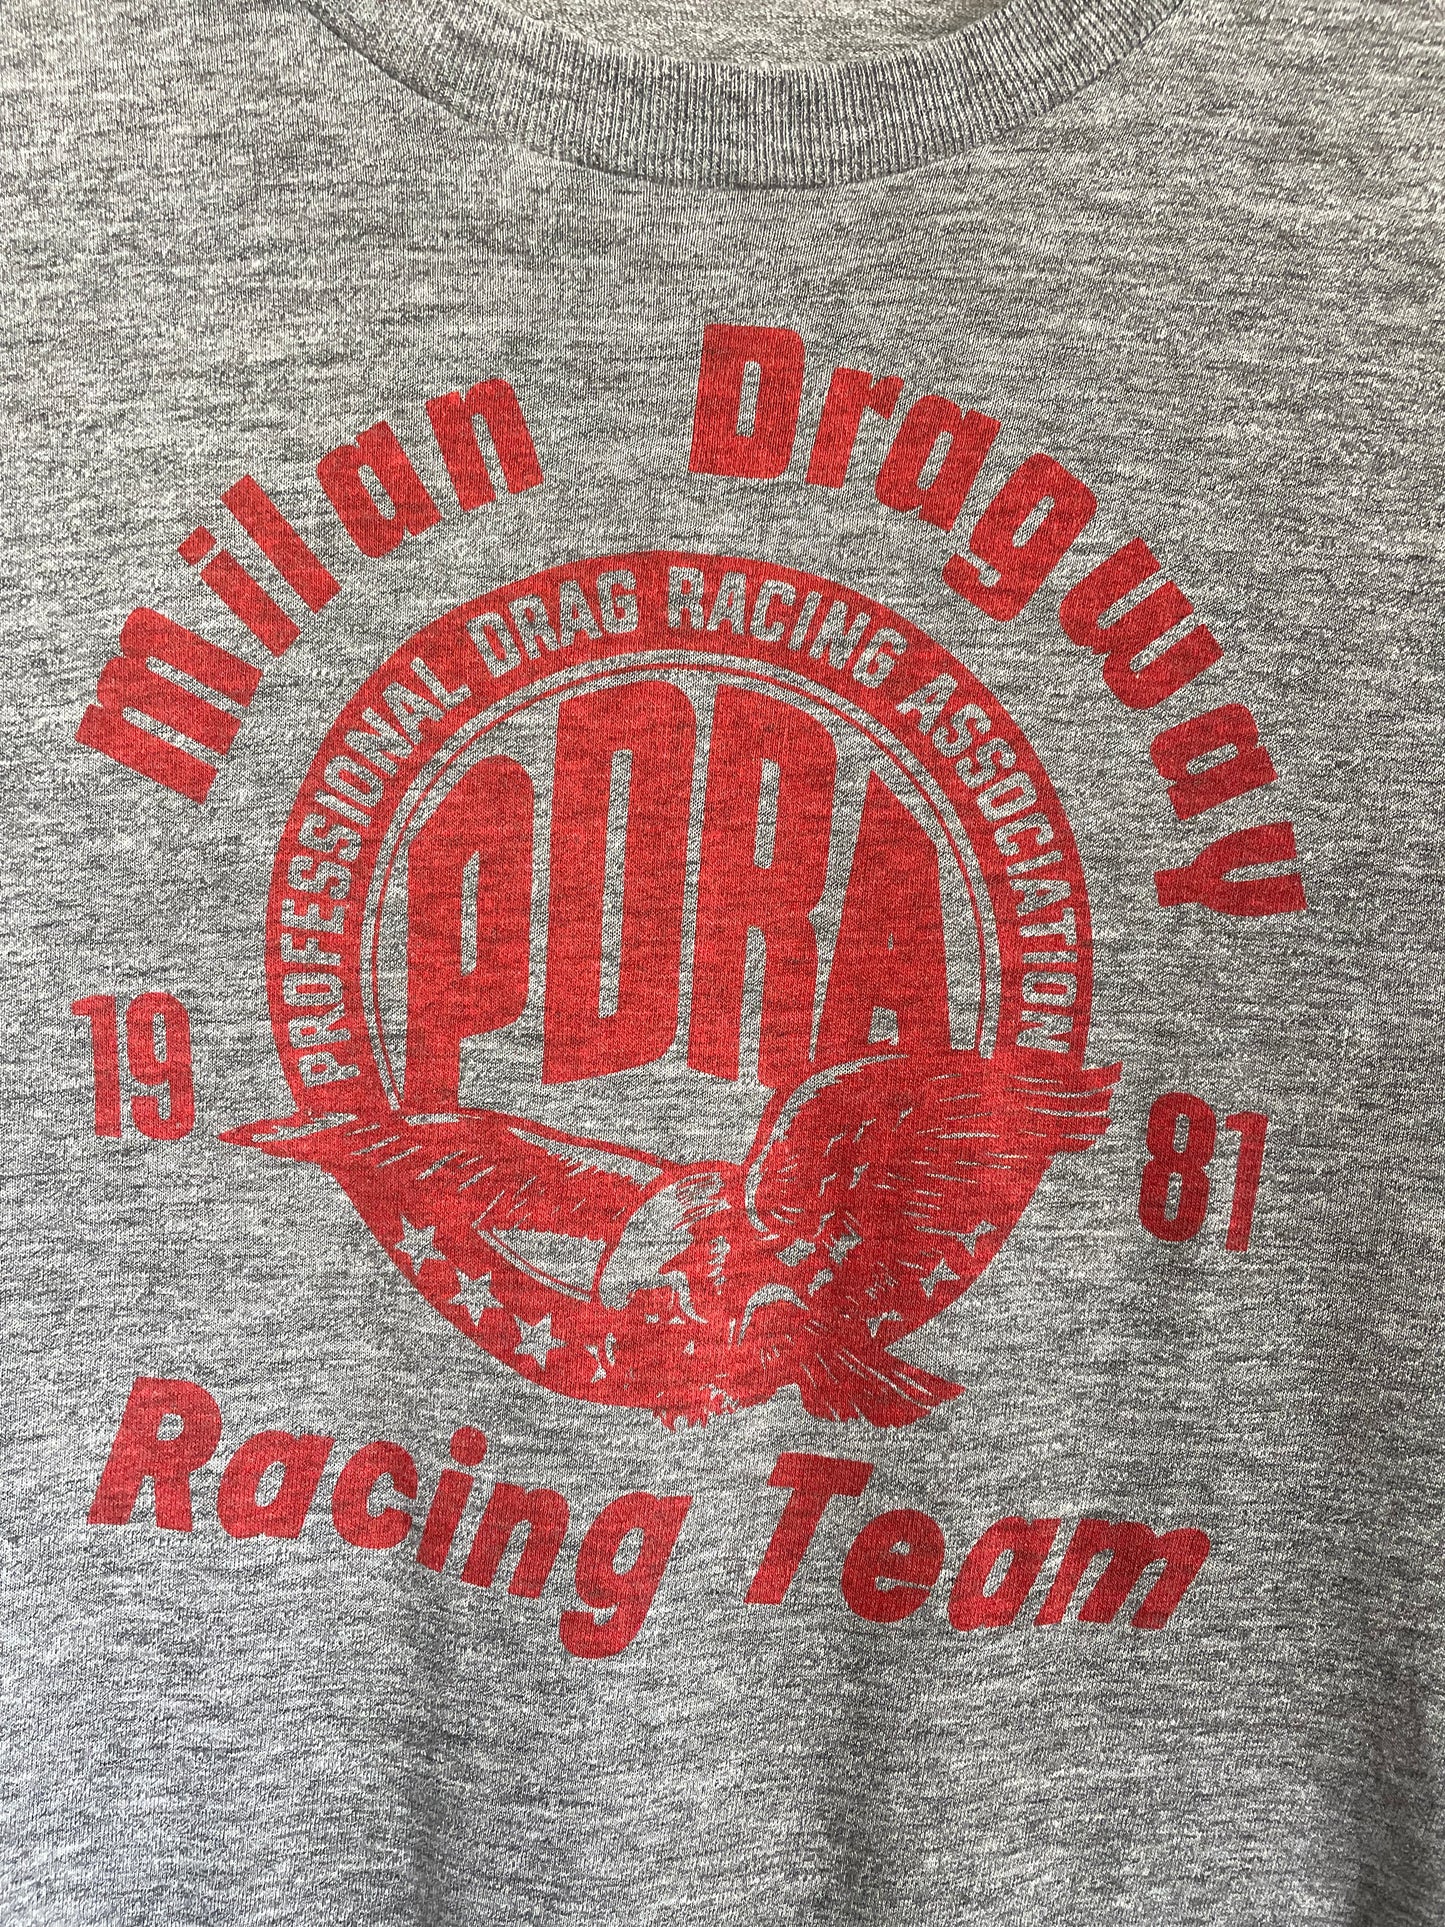 80s Milan Dragway Racing Team Shirt